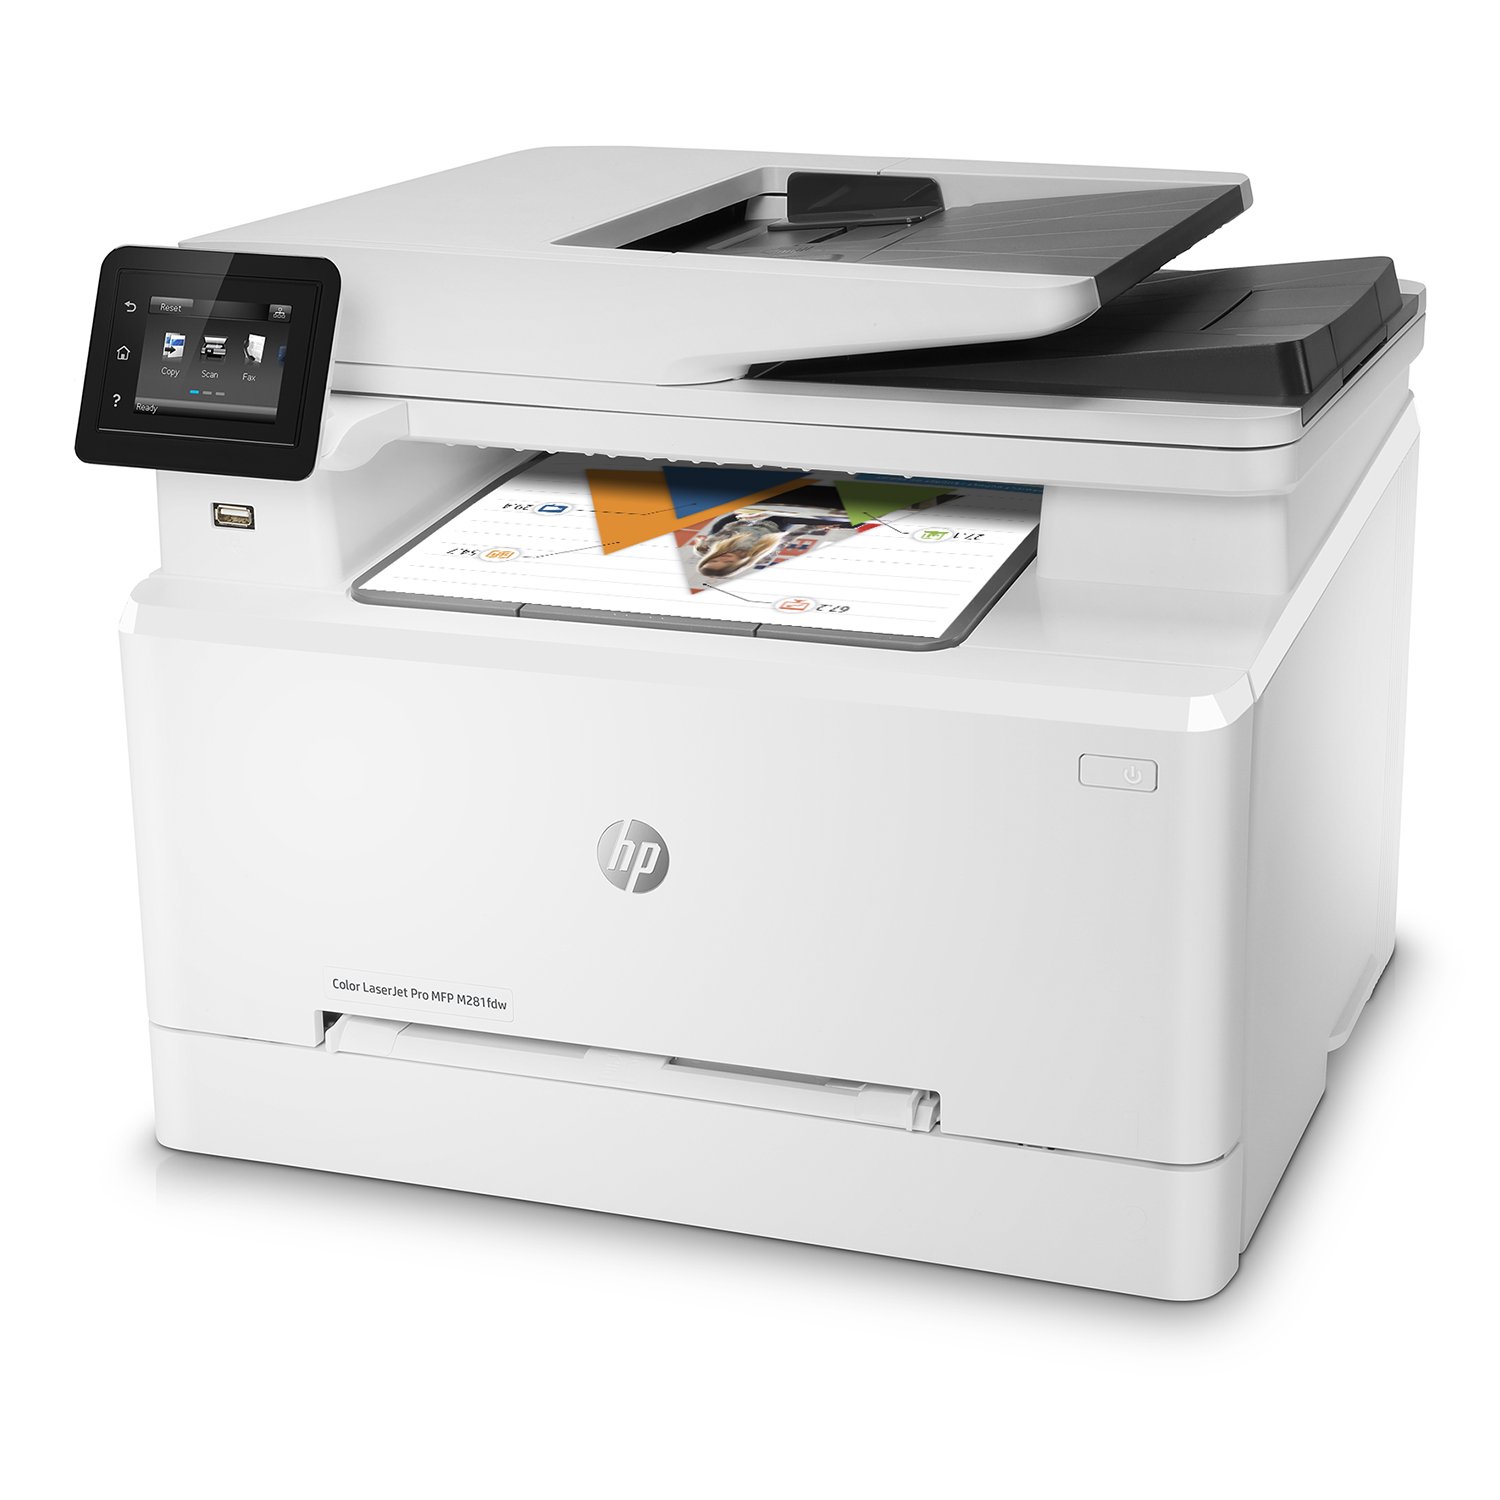 Color LaserJet Pro MFP M281fdw Printer,T6B82A White